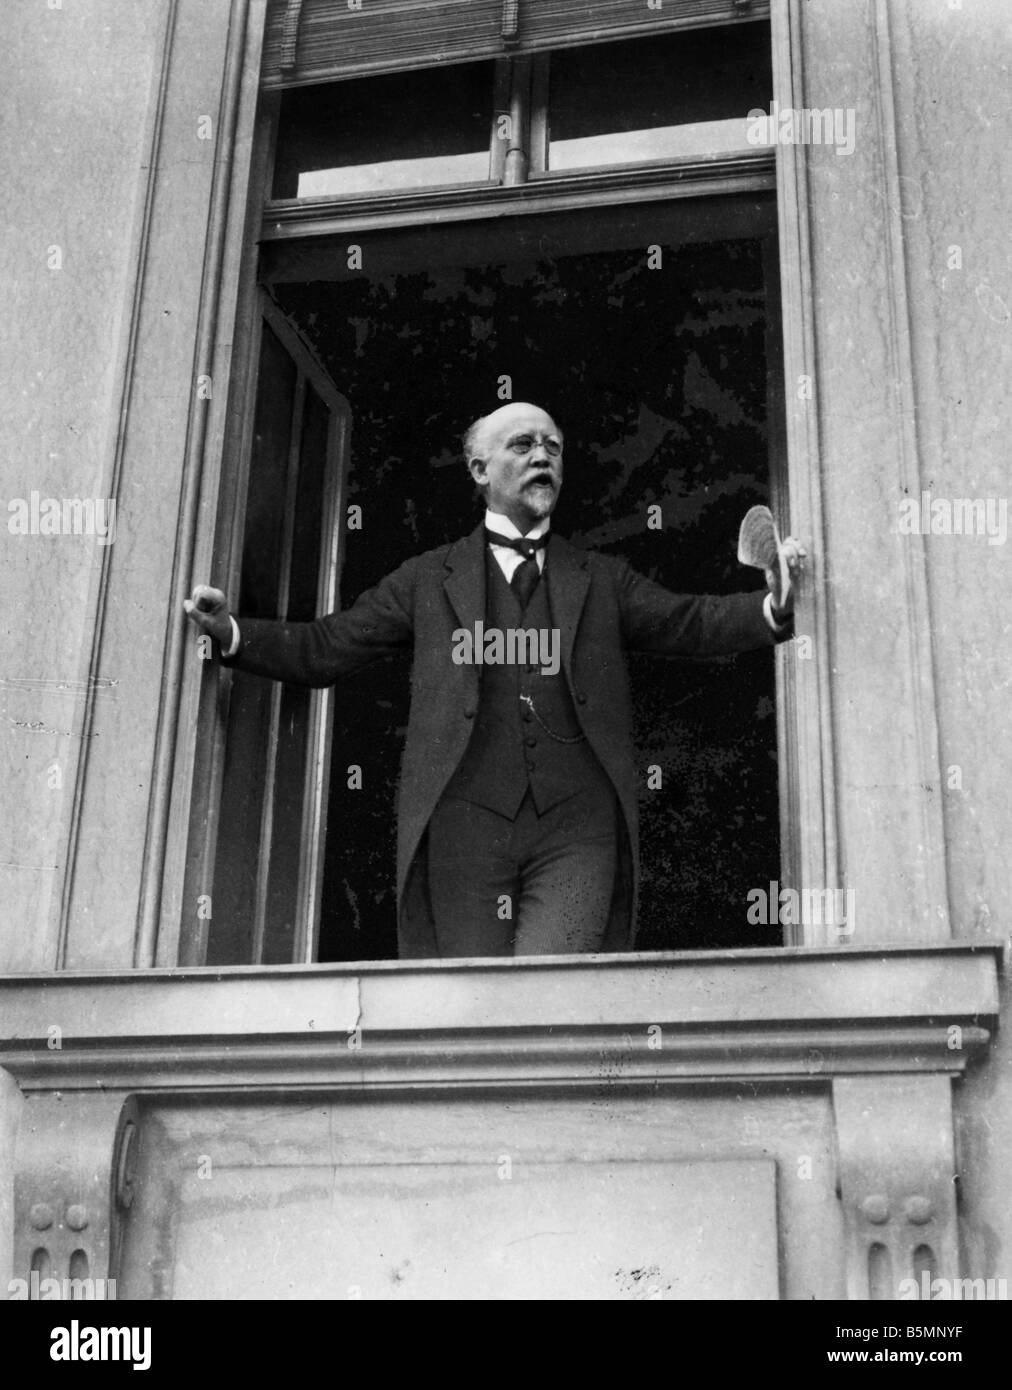 8 1918 11 9 A1 21 B E RIVOLUZIONE 1918 19 Discorso di Scheidemann Rivoluzione Novembre 1918 Friedrich Ebert diventa cancelliere del Reich Foto Stock